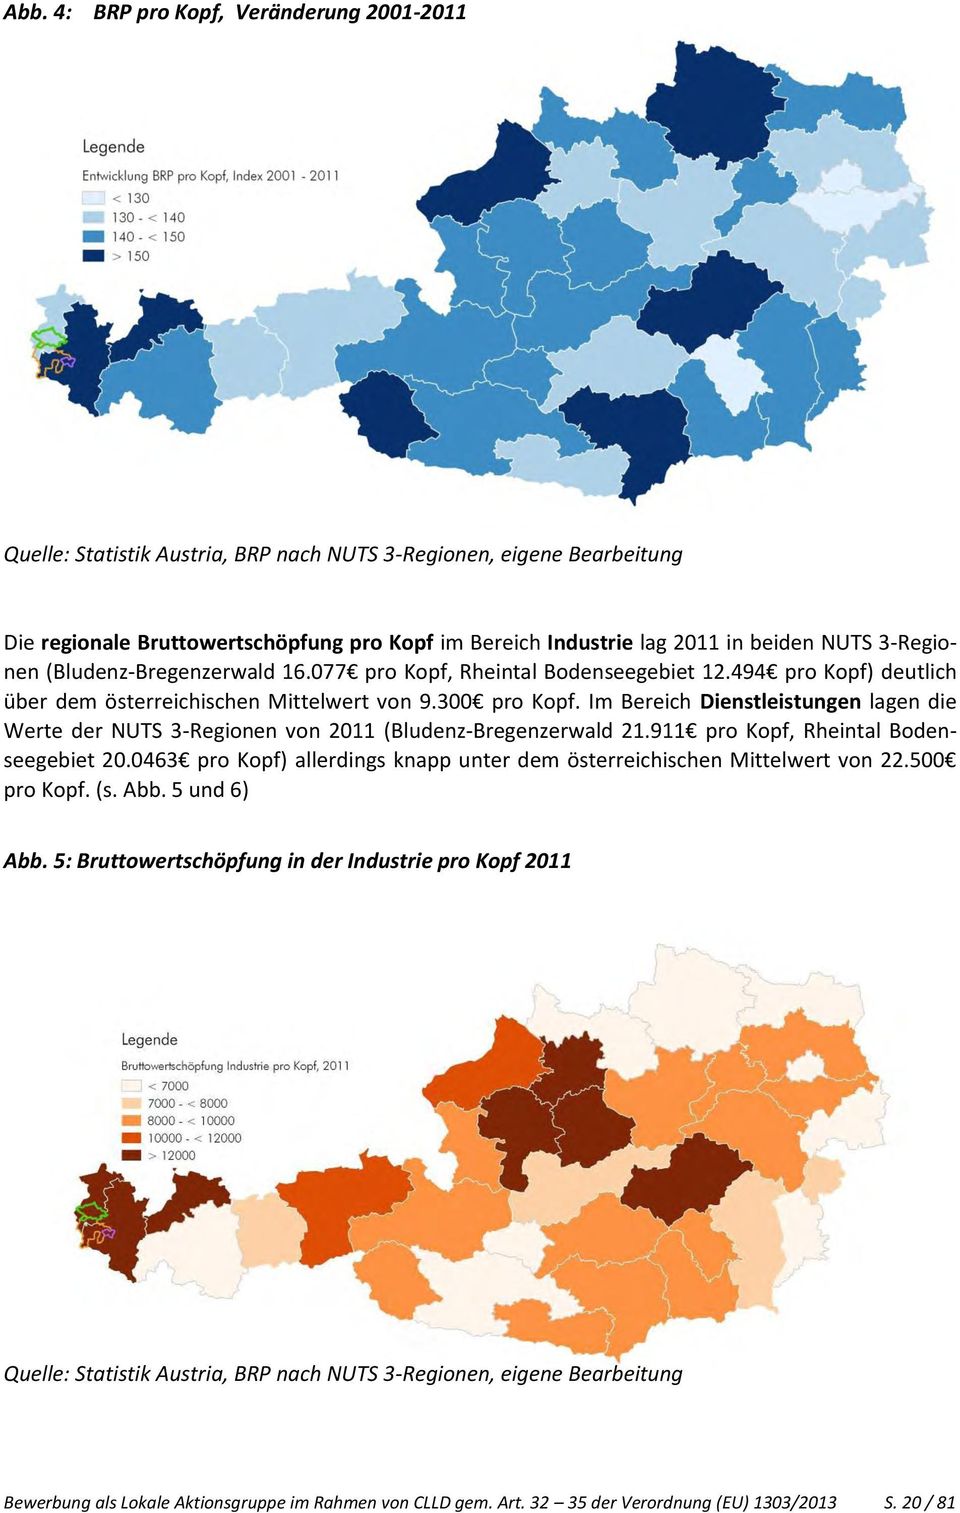 Im Bereich Dienstleistungen lagen die Werte der NUTS 3-Regionen von 2011 (Bludenz-Bregenzerwald 21.911 pro Kopf, Rheintal Bodenseegebiet 20.